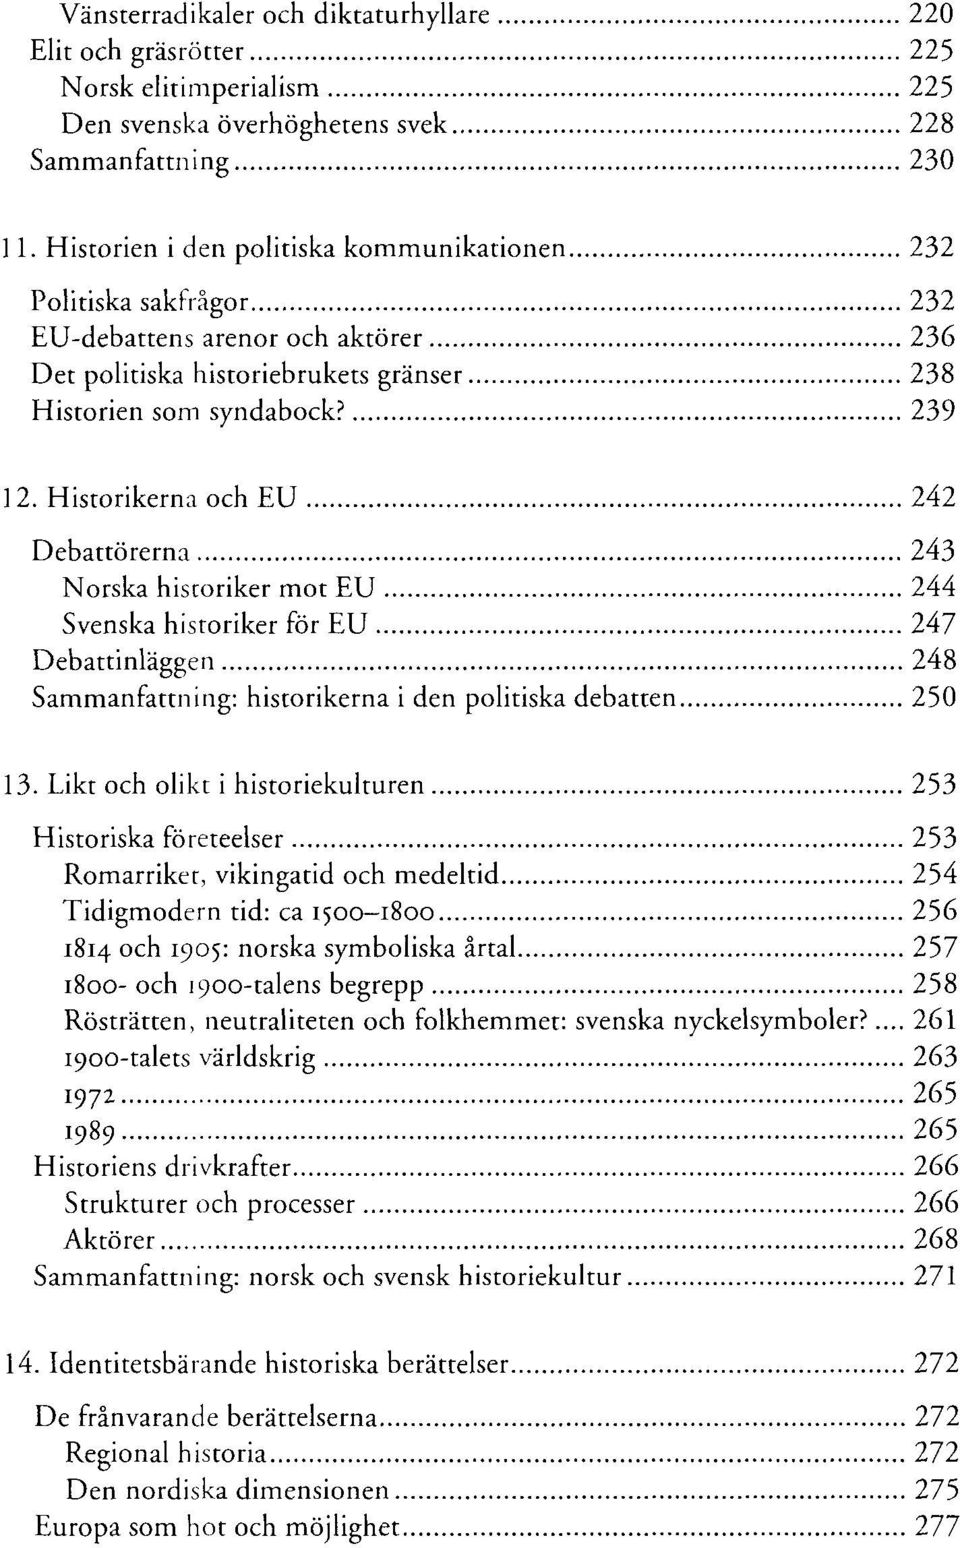 Historikerna och EU 242 Debattörerna 243 Norska historiker mot EU 244 Svenska historiker för EU 247 Debattinläggen 248 Sammanfattning: historikerna i den politiska debatten 250 13.